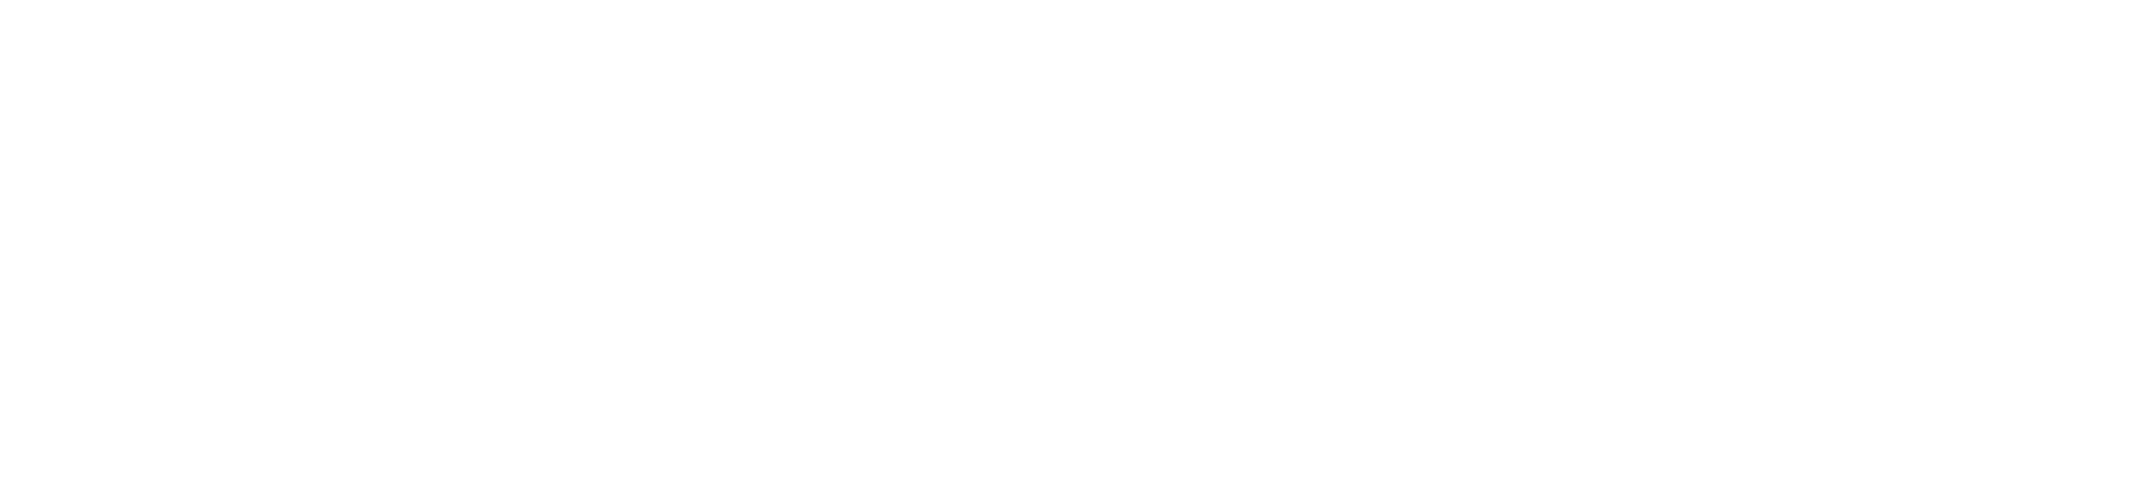 شعار RBHA